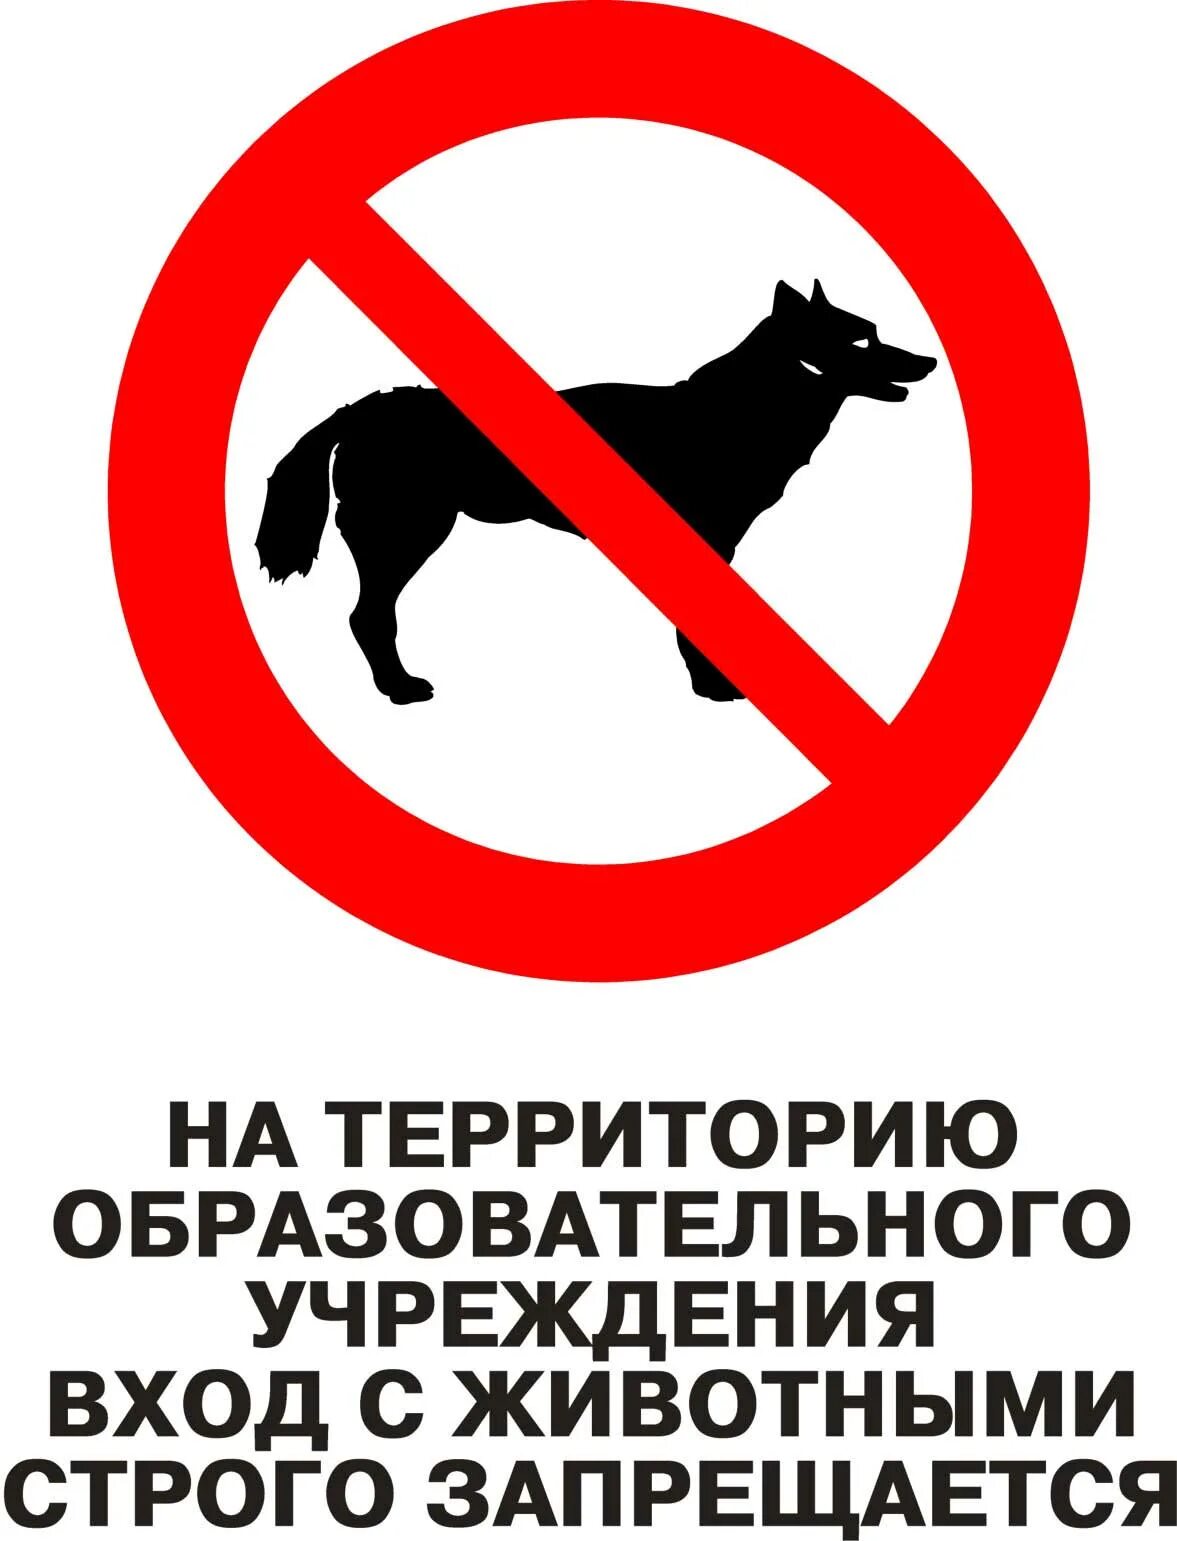 Вход с собаками запрещен. Вход с санками запрещен. Выгул собак запрещен. Вход на территорию школы с собаками запрещен. Запреты в детском саду